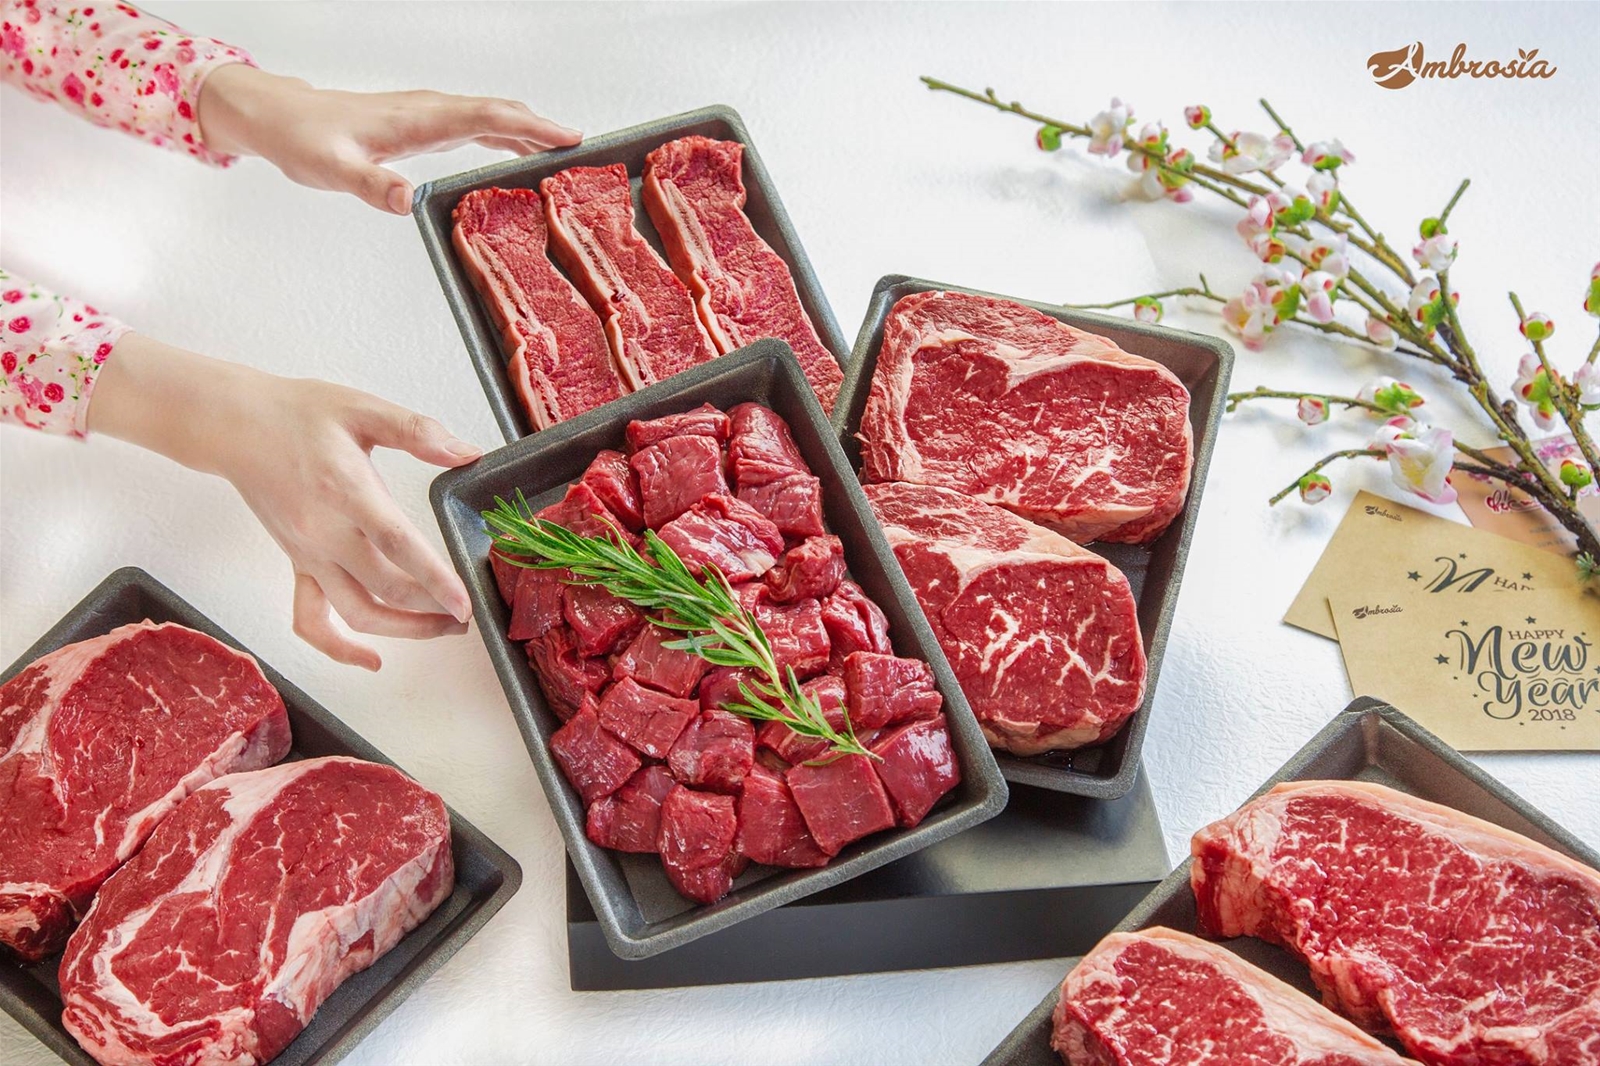 testosterone sẽ được cải thiện đáng kể khi cơ thể tiếp thu dưỡng chất của thịt bò.